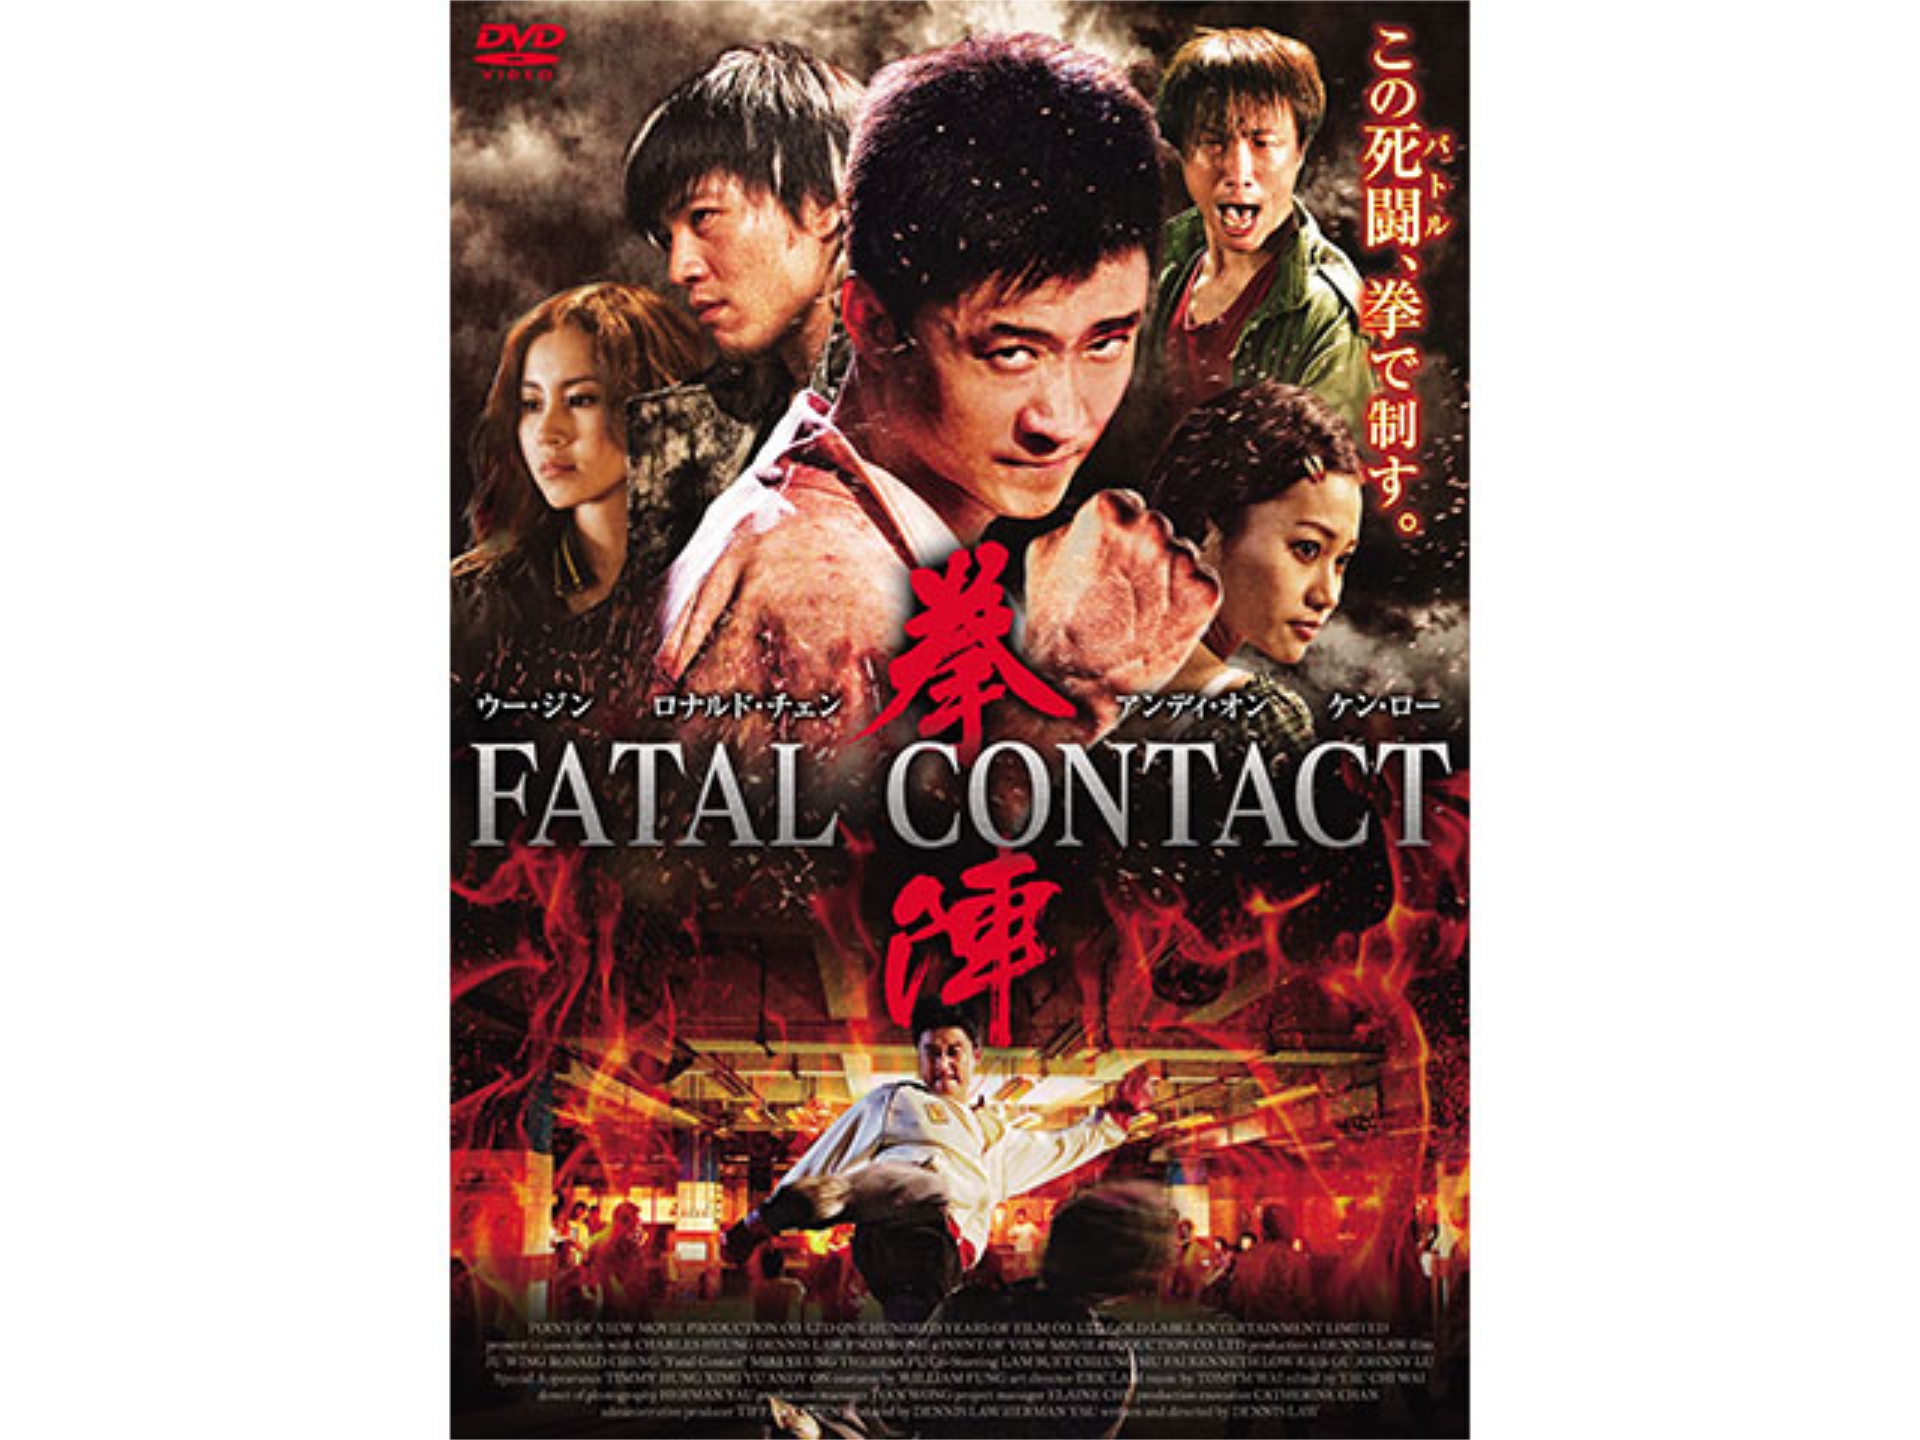 無料視聴あり 韓流 拳陣 Fatal Contact の動画 初月無料 動画配信サービスのビデオマーケット